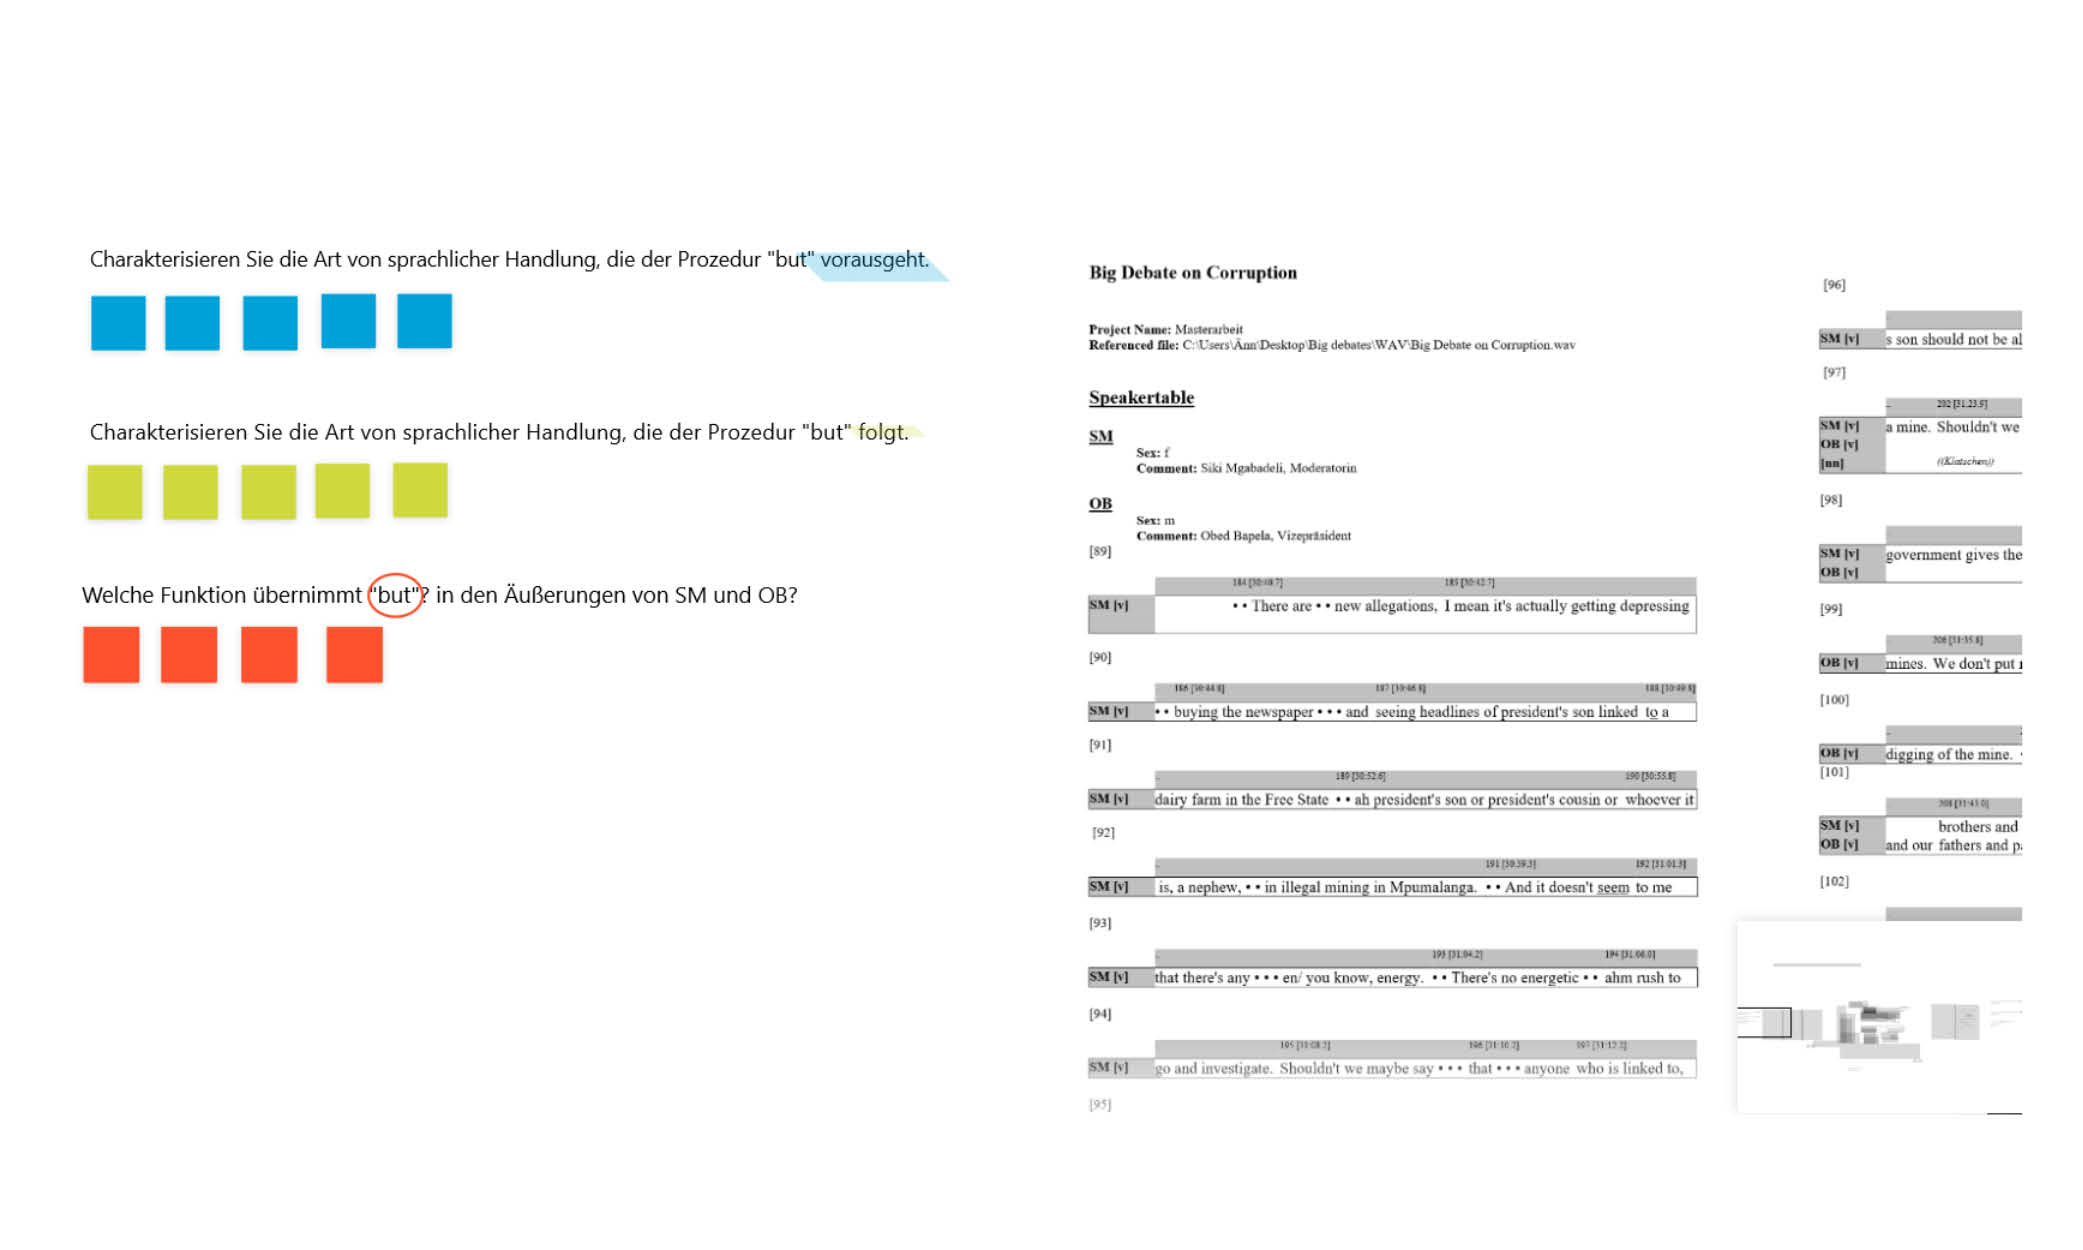 Die Aufgaben auf der digitalen Arbeitsfläche sind mit verschiedenen Farben kategorisiert. Das Transkript besteht aus Text mit Metadaten zum Transkript und zu den sprechenden Personen. In der unteren, rechten Ecke ist ein Miniaturüberblick des gesamten Whiteboards zu sehen.